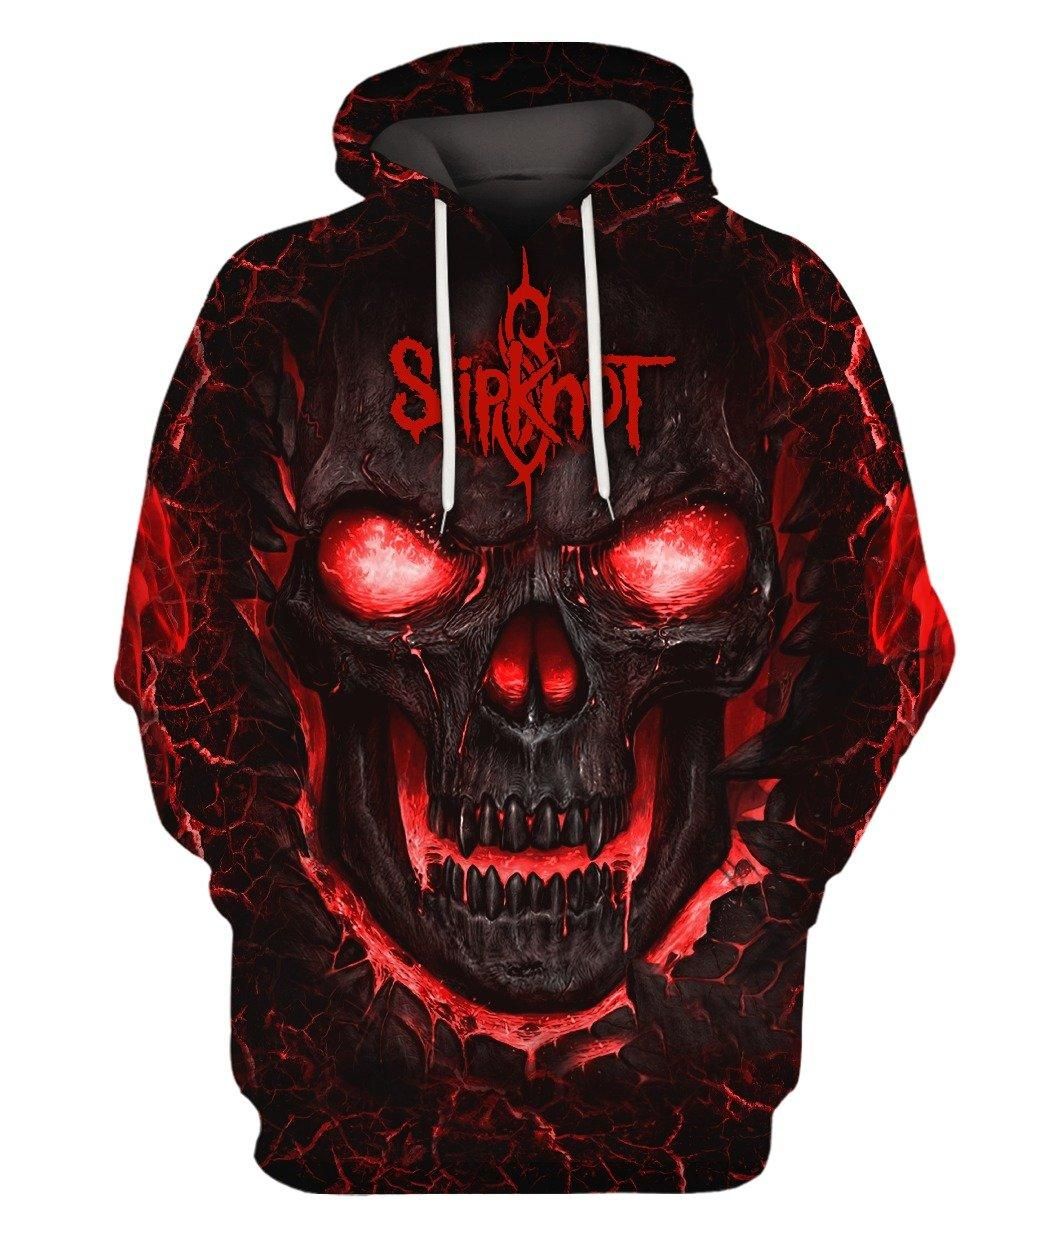 Slipknot Legend Rock Band Studio Albums 3D Designed Allover Gift With Custom Name Number For Slipknot Fans Hoodie